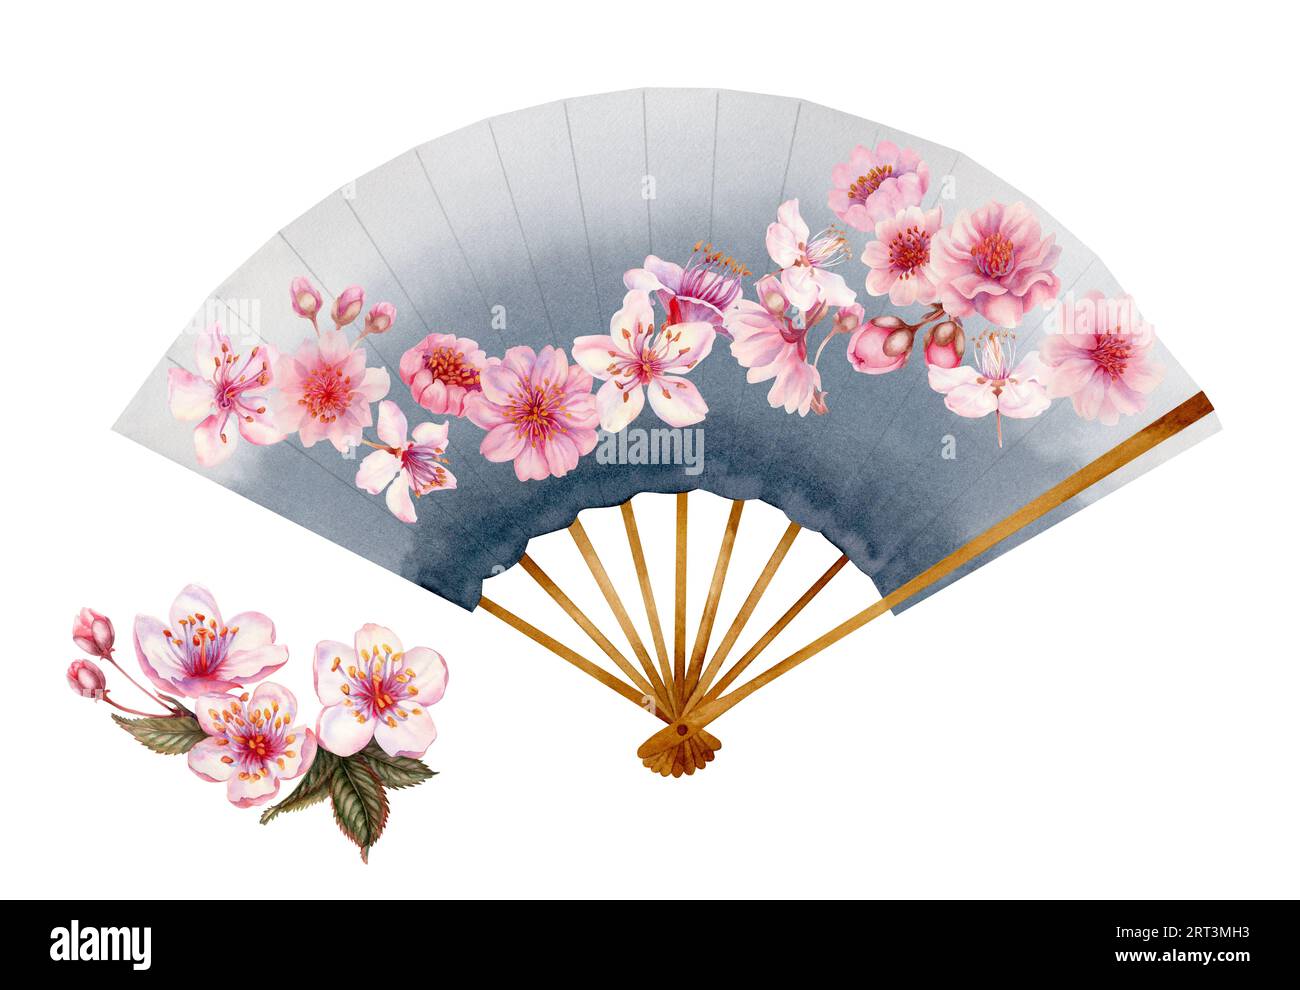 Aquarell-Illustration eines grauen, offenen Papierfächers mit Kirschblüten. Element isoliert auf weißem Hintergrund Stockfoto